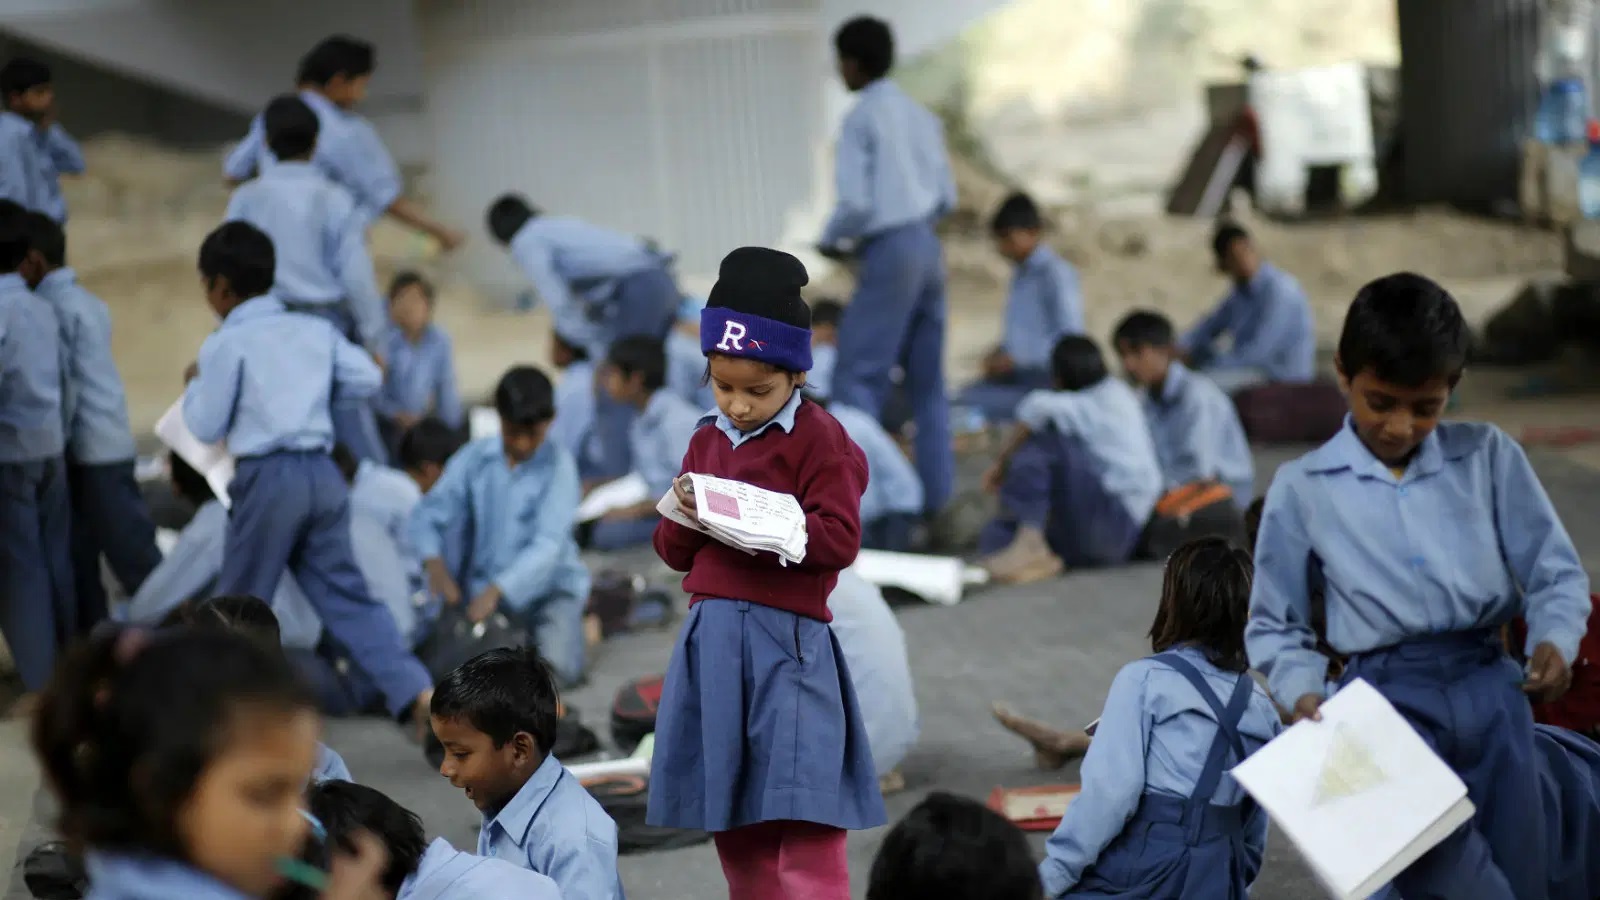 कोविड-19 और स्कूली शिक्षा का संकट: सब पढ़ा-लिखा भूलते जा रहे हैं बच्चे